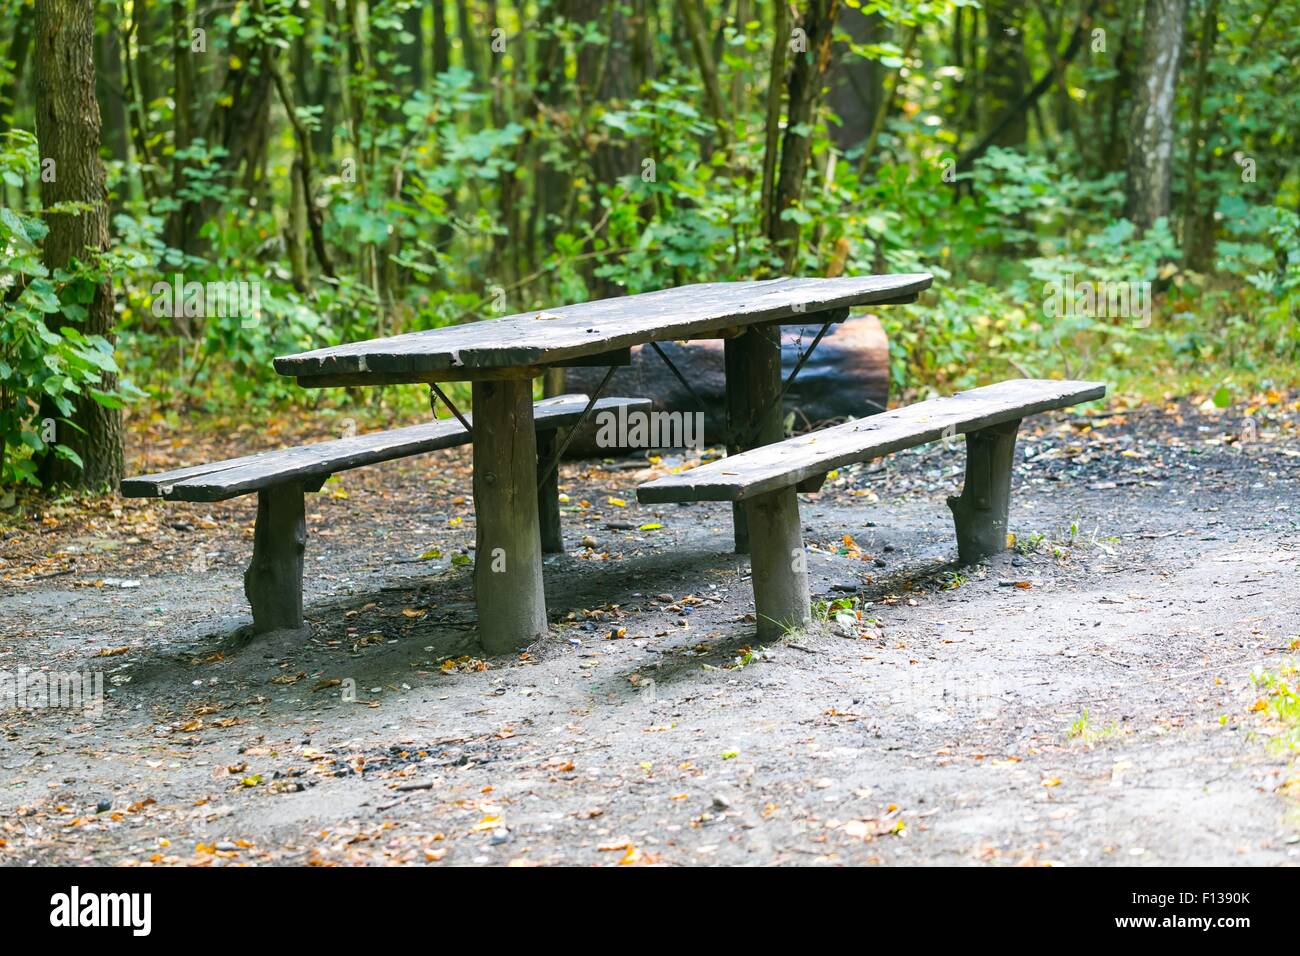 Panca e tavolo in foresta. Il luogo di riposo per i turisti. Verde naturale paesaggio forestale. Foto Stock